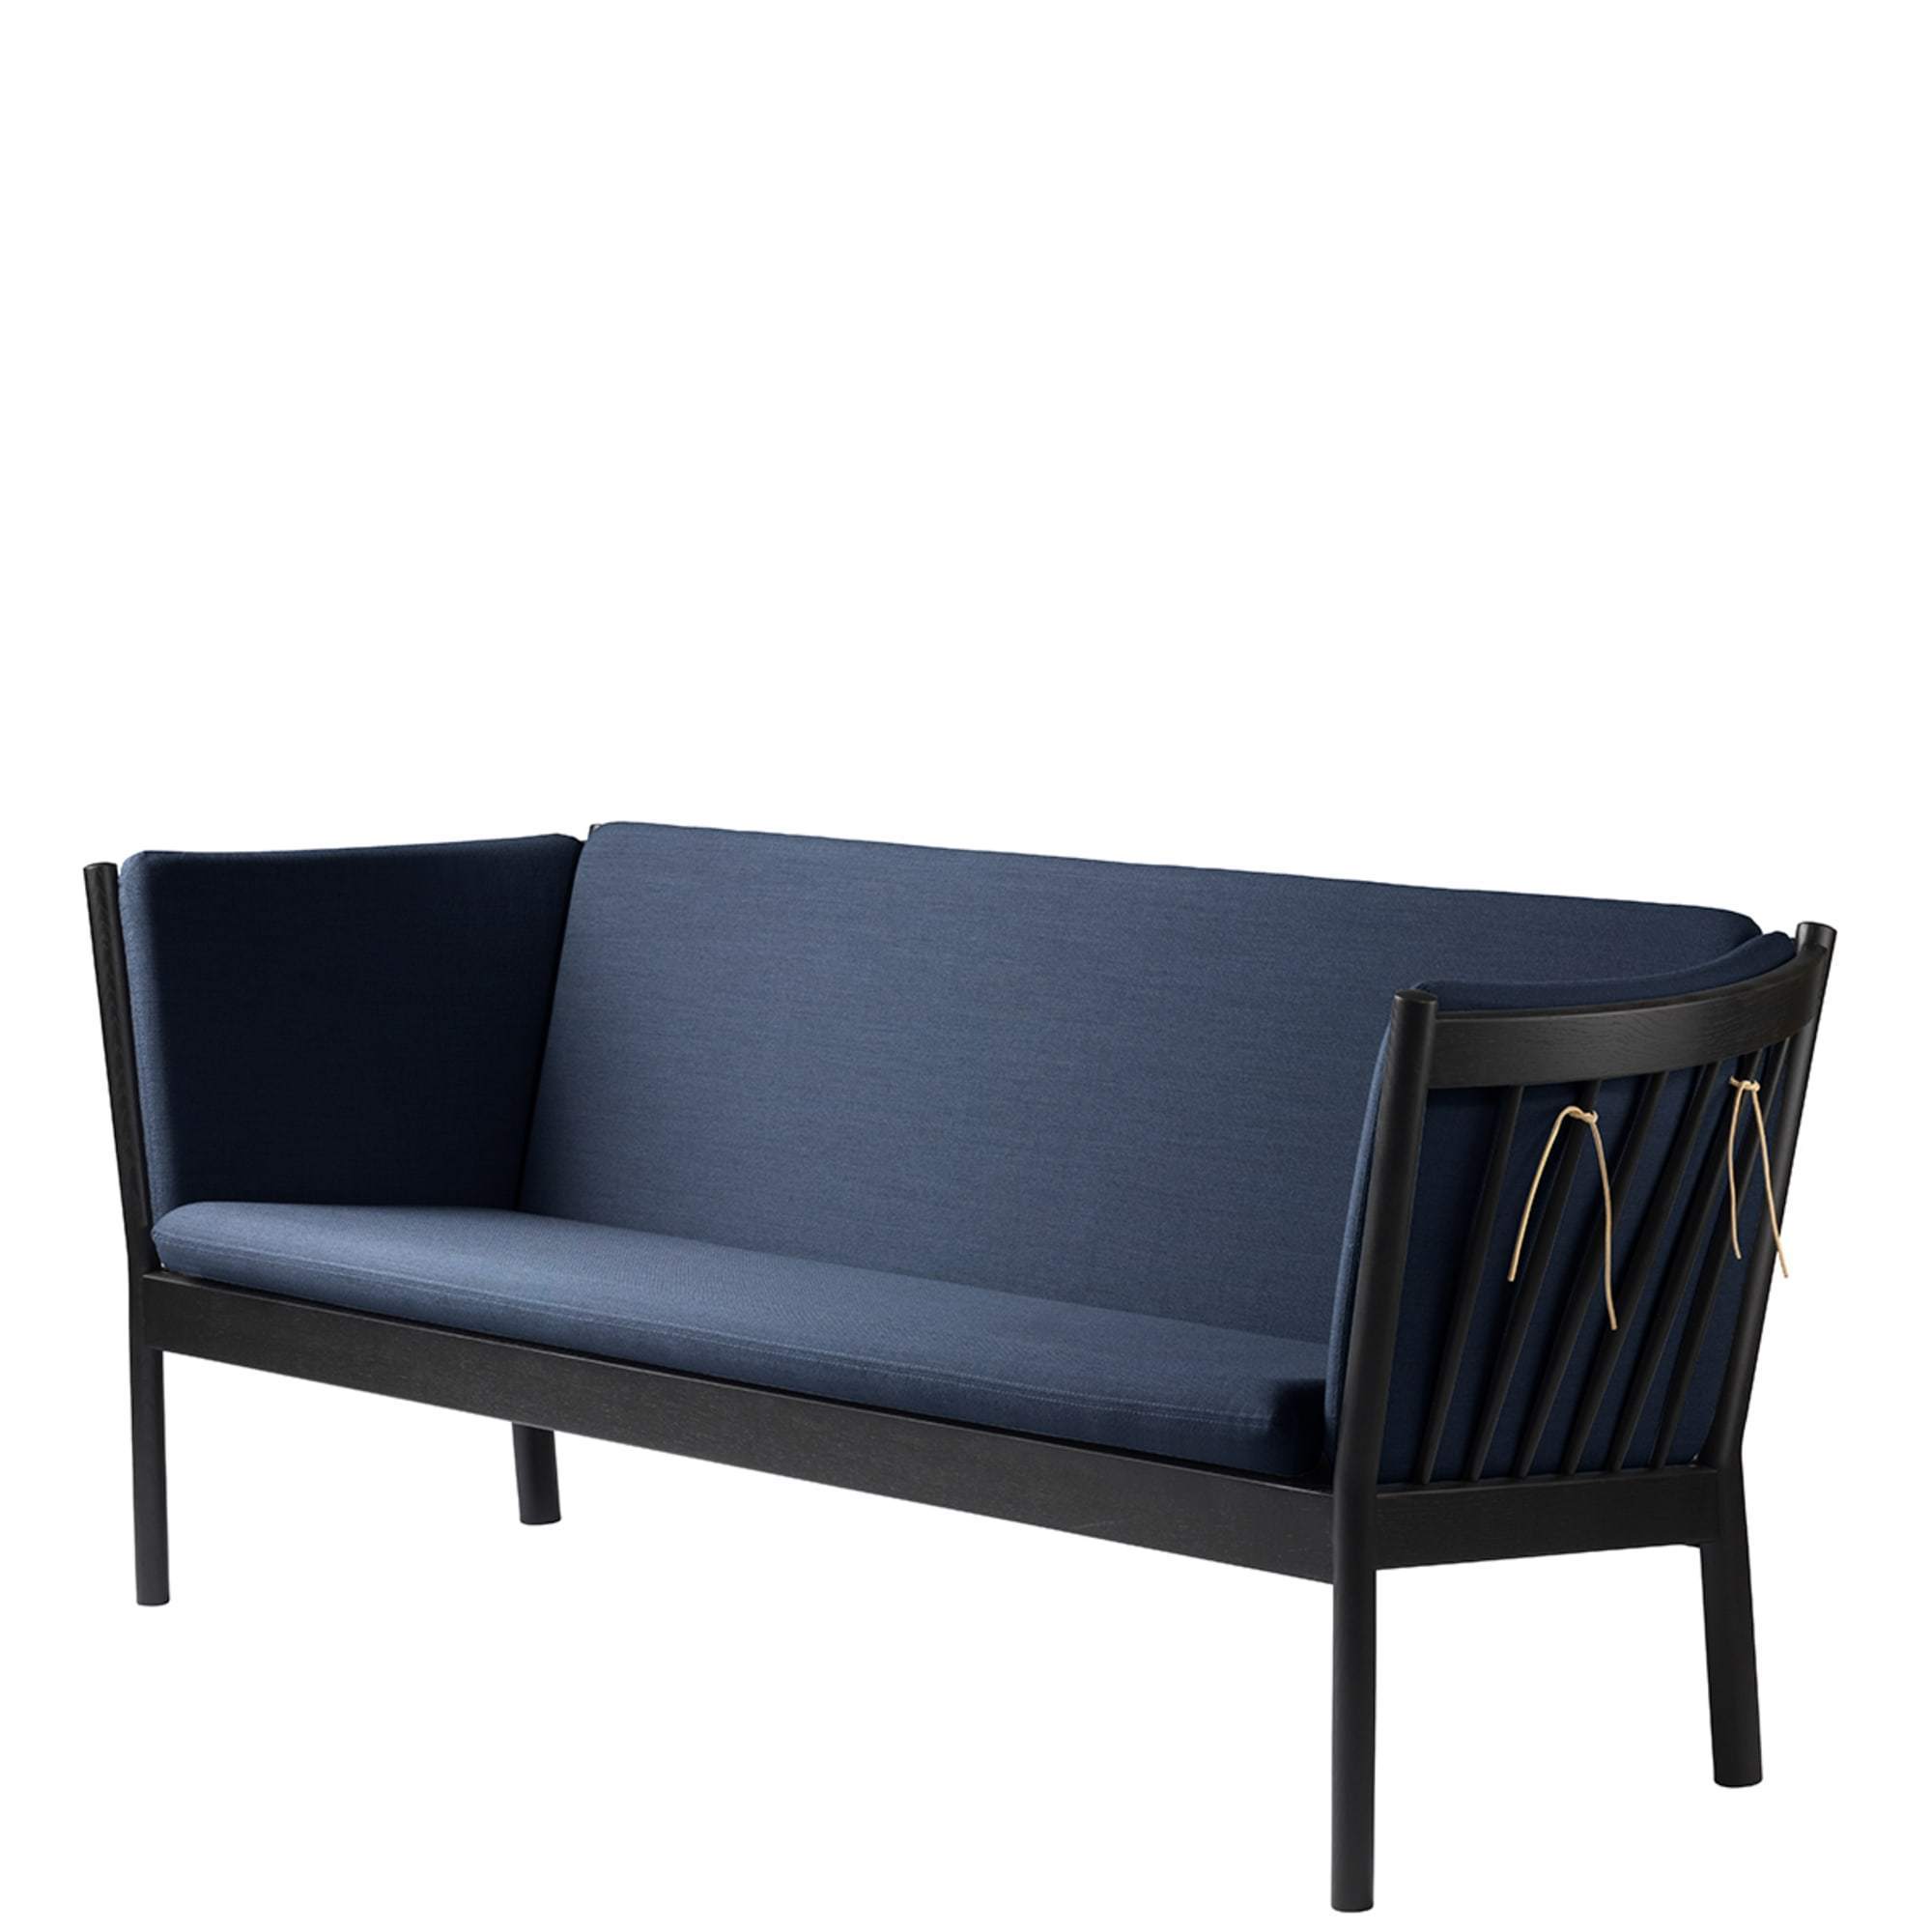 Fdb Møbler J149 3 Person Sofa, Black Oak, Dark Blue Fabric